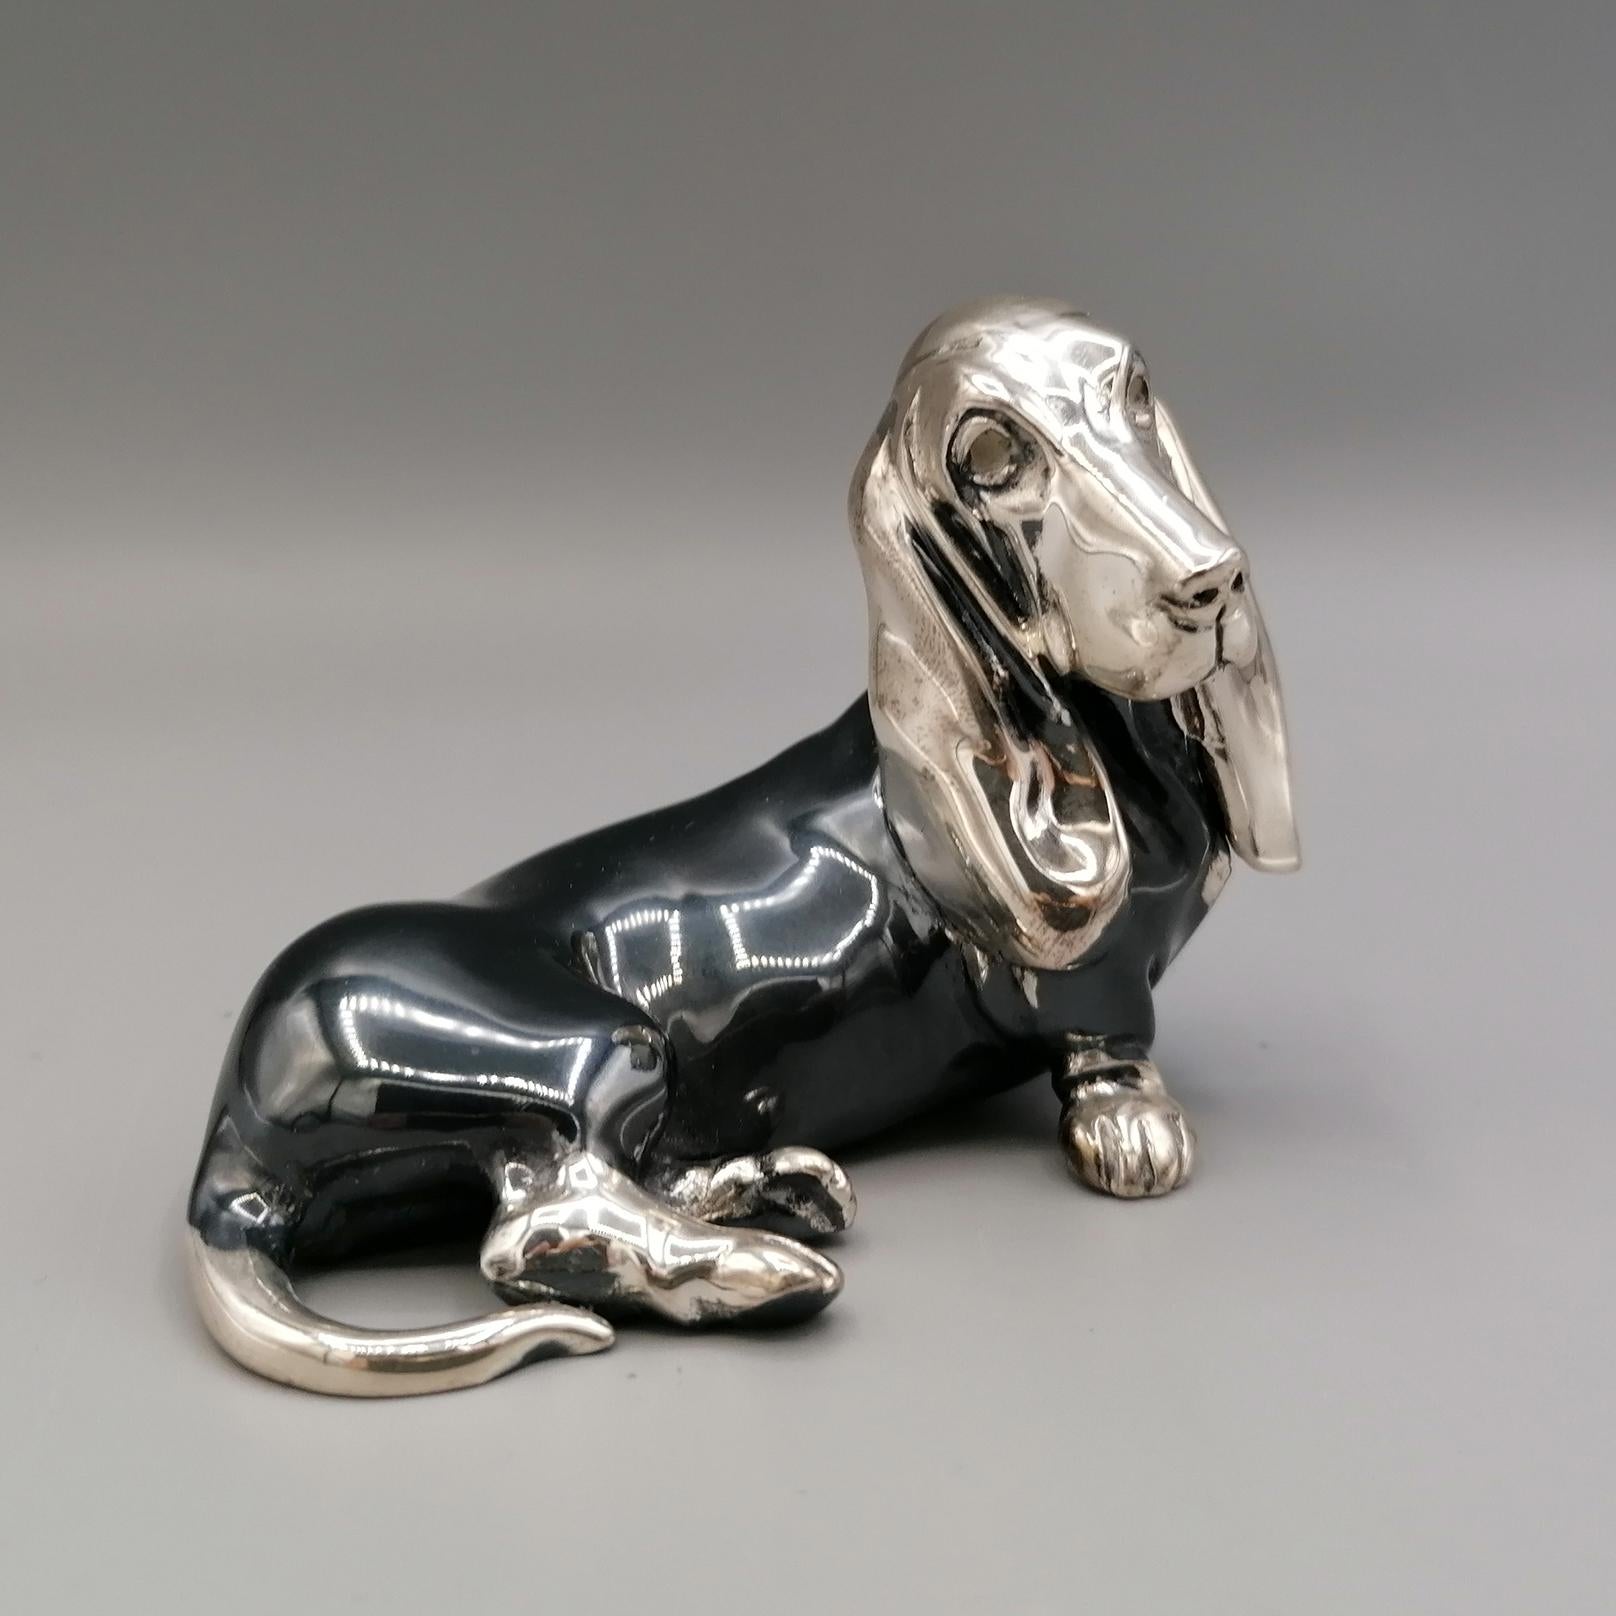 Basset Hound Hundeskulptur aus 800 massivem Silber.
Das Objekt wurde mit der Technik des Schmelzens in zwei Hälften hergestellt und anschließend durch Schweißen verbunden. 
Im unteren Teil der Statuette sind die beiden Löcher zu sehen, durch die